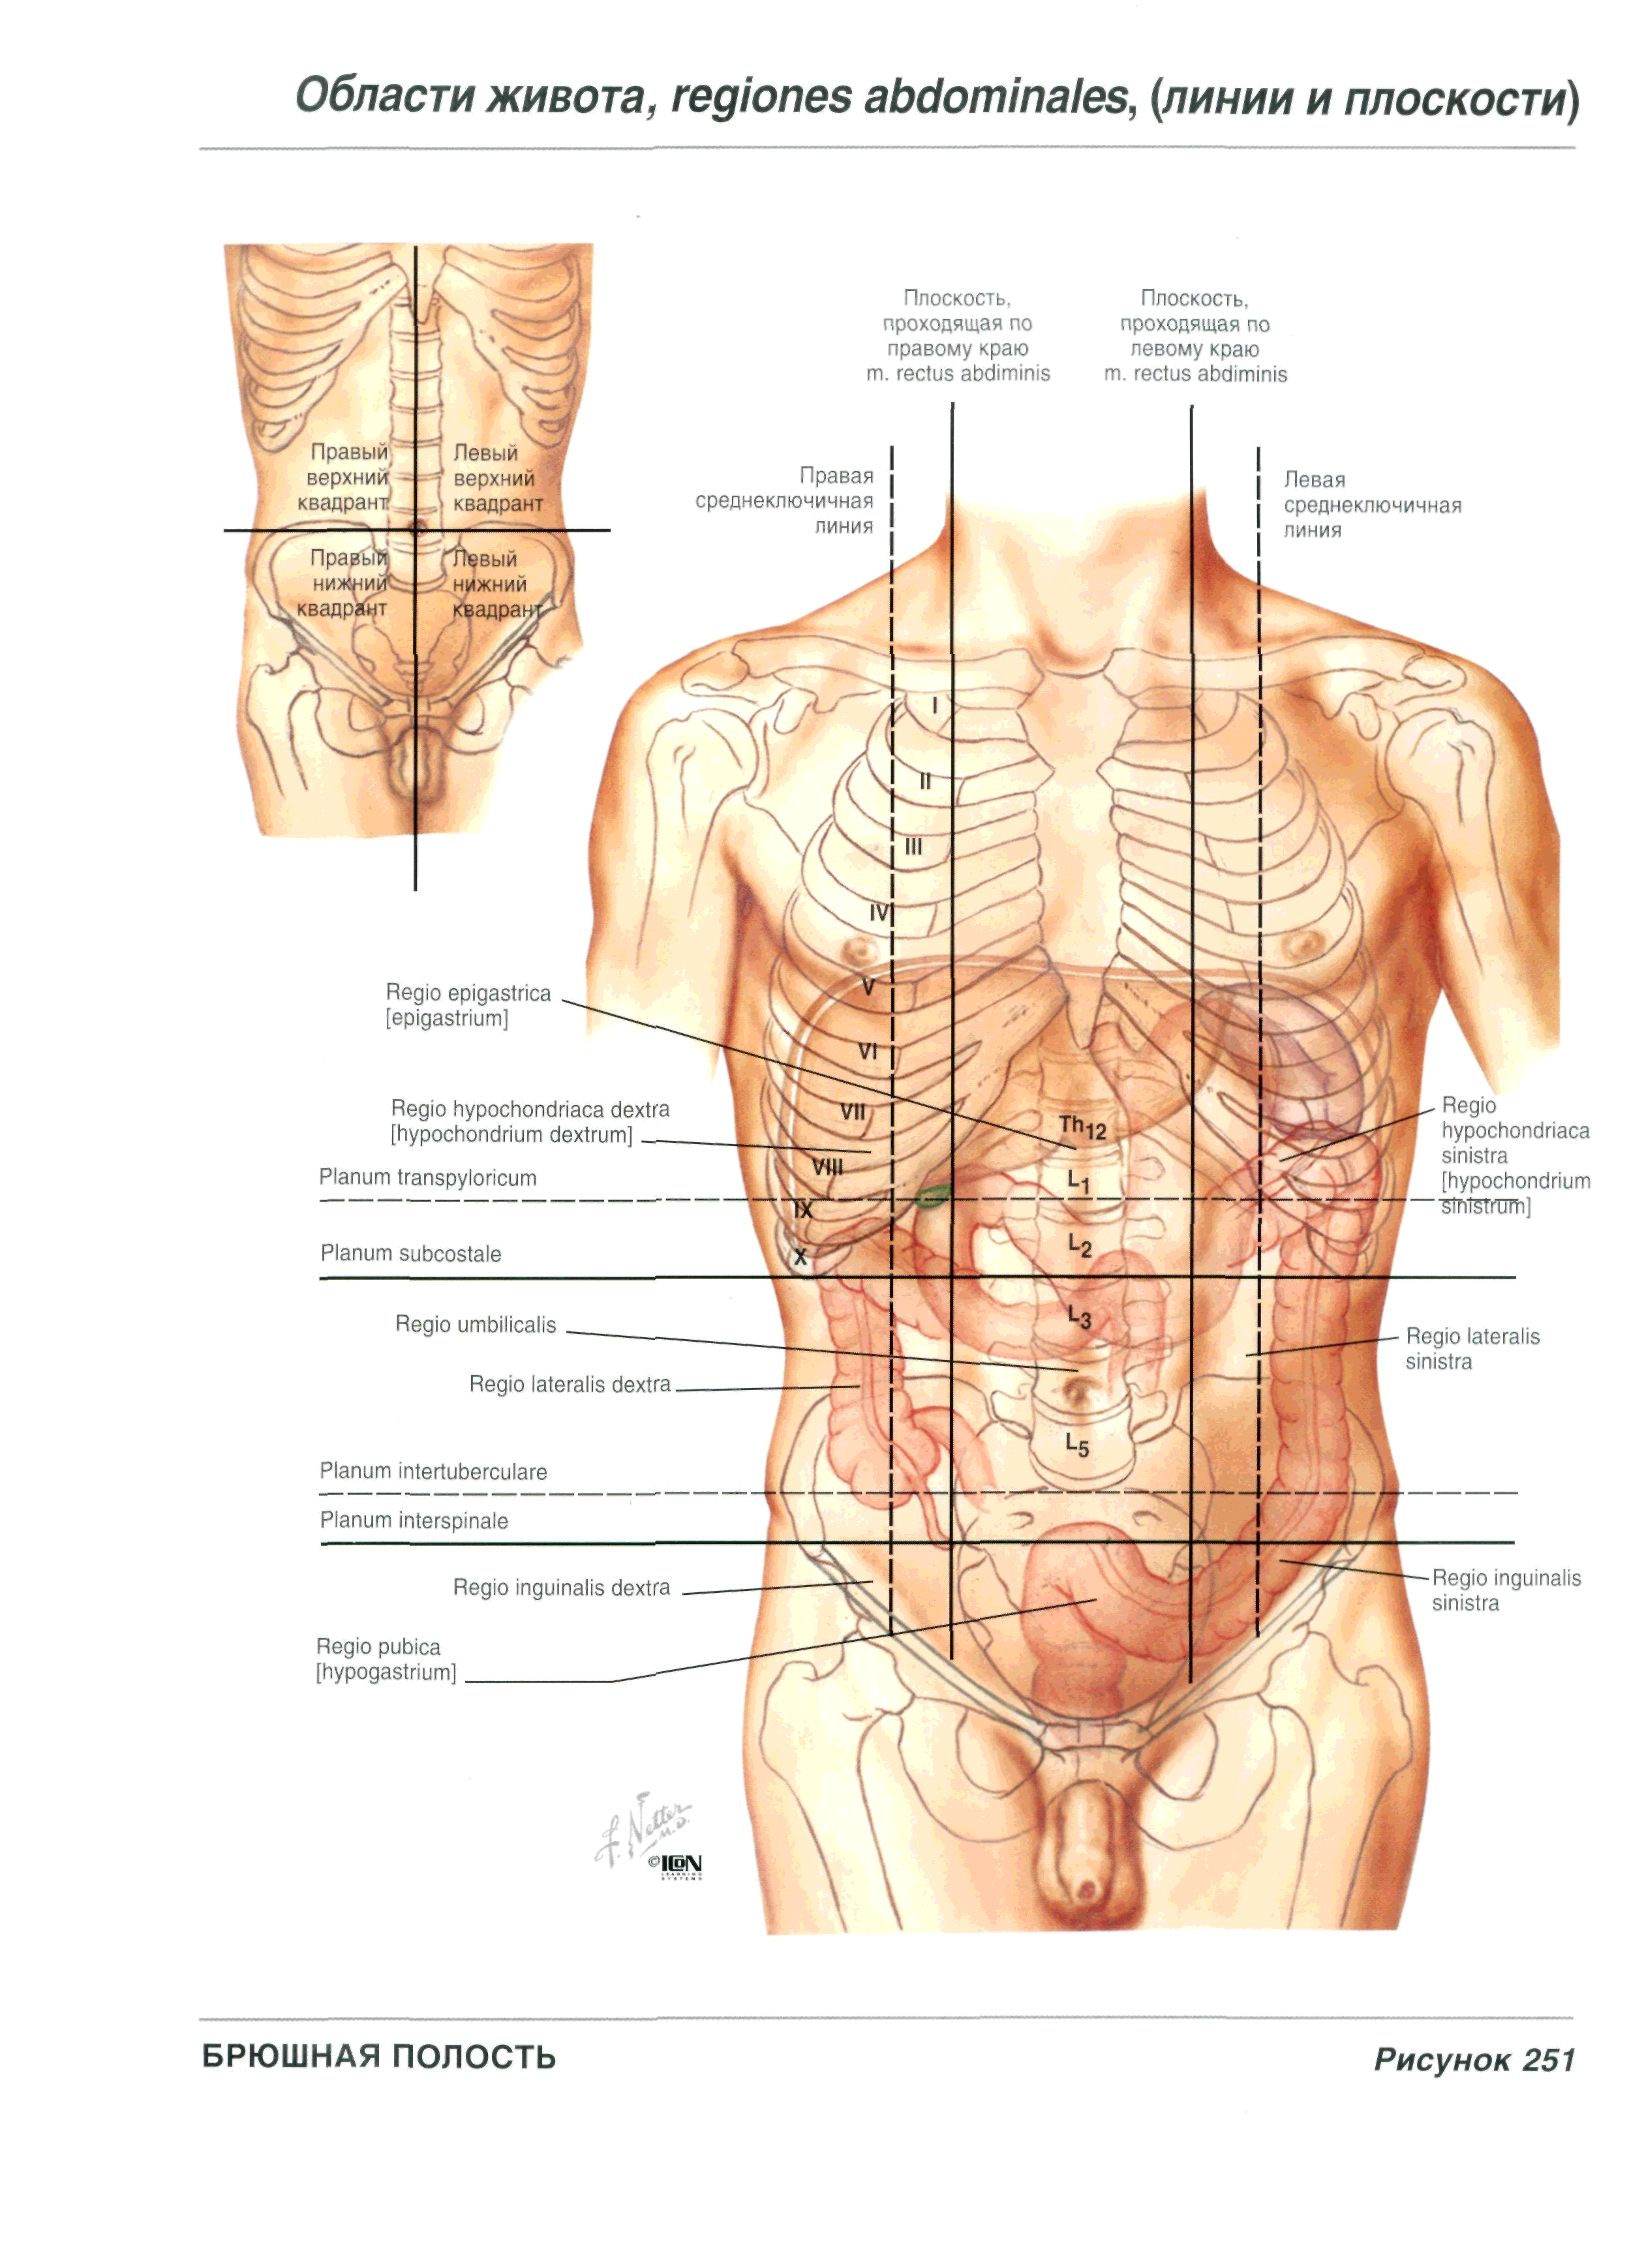 Боль колет в левом подреберье. Анатомия левый бок. Левое подреберье анатомия. Болит живот под левым ребром спереди что это. Анатомия человека правый бок.